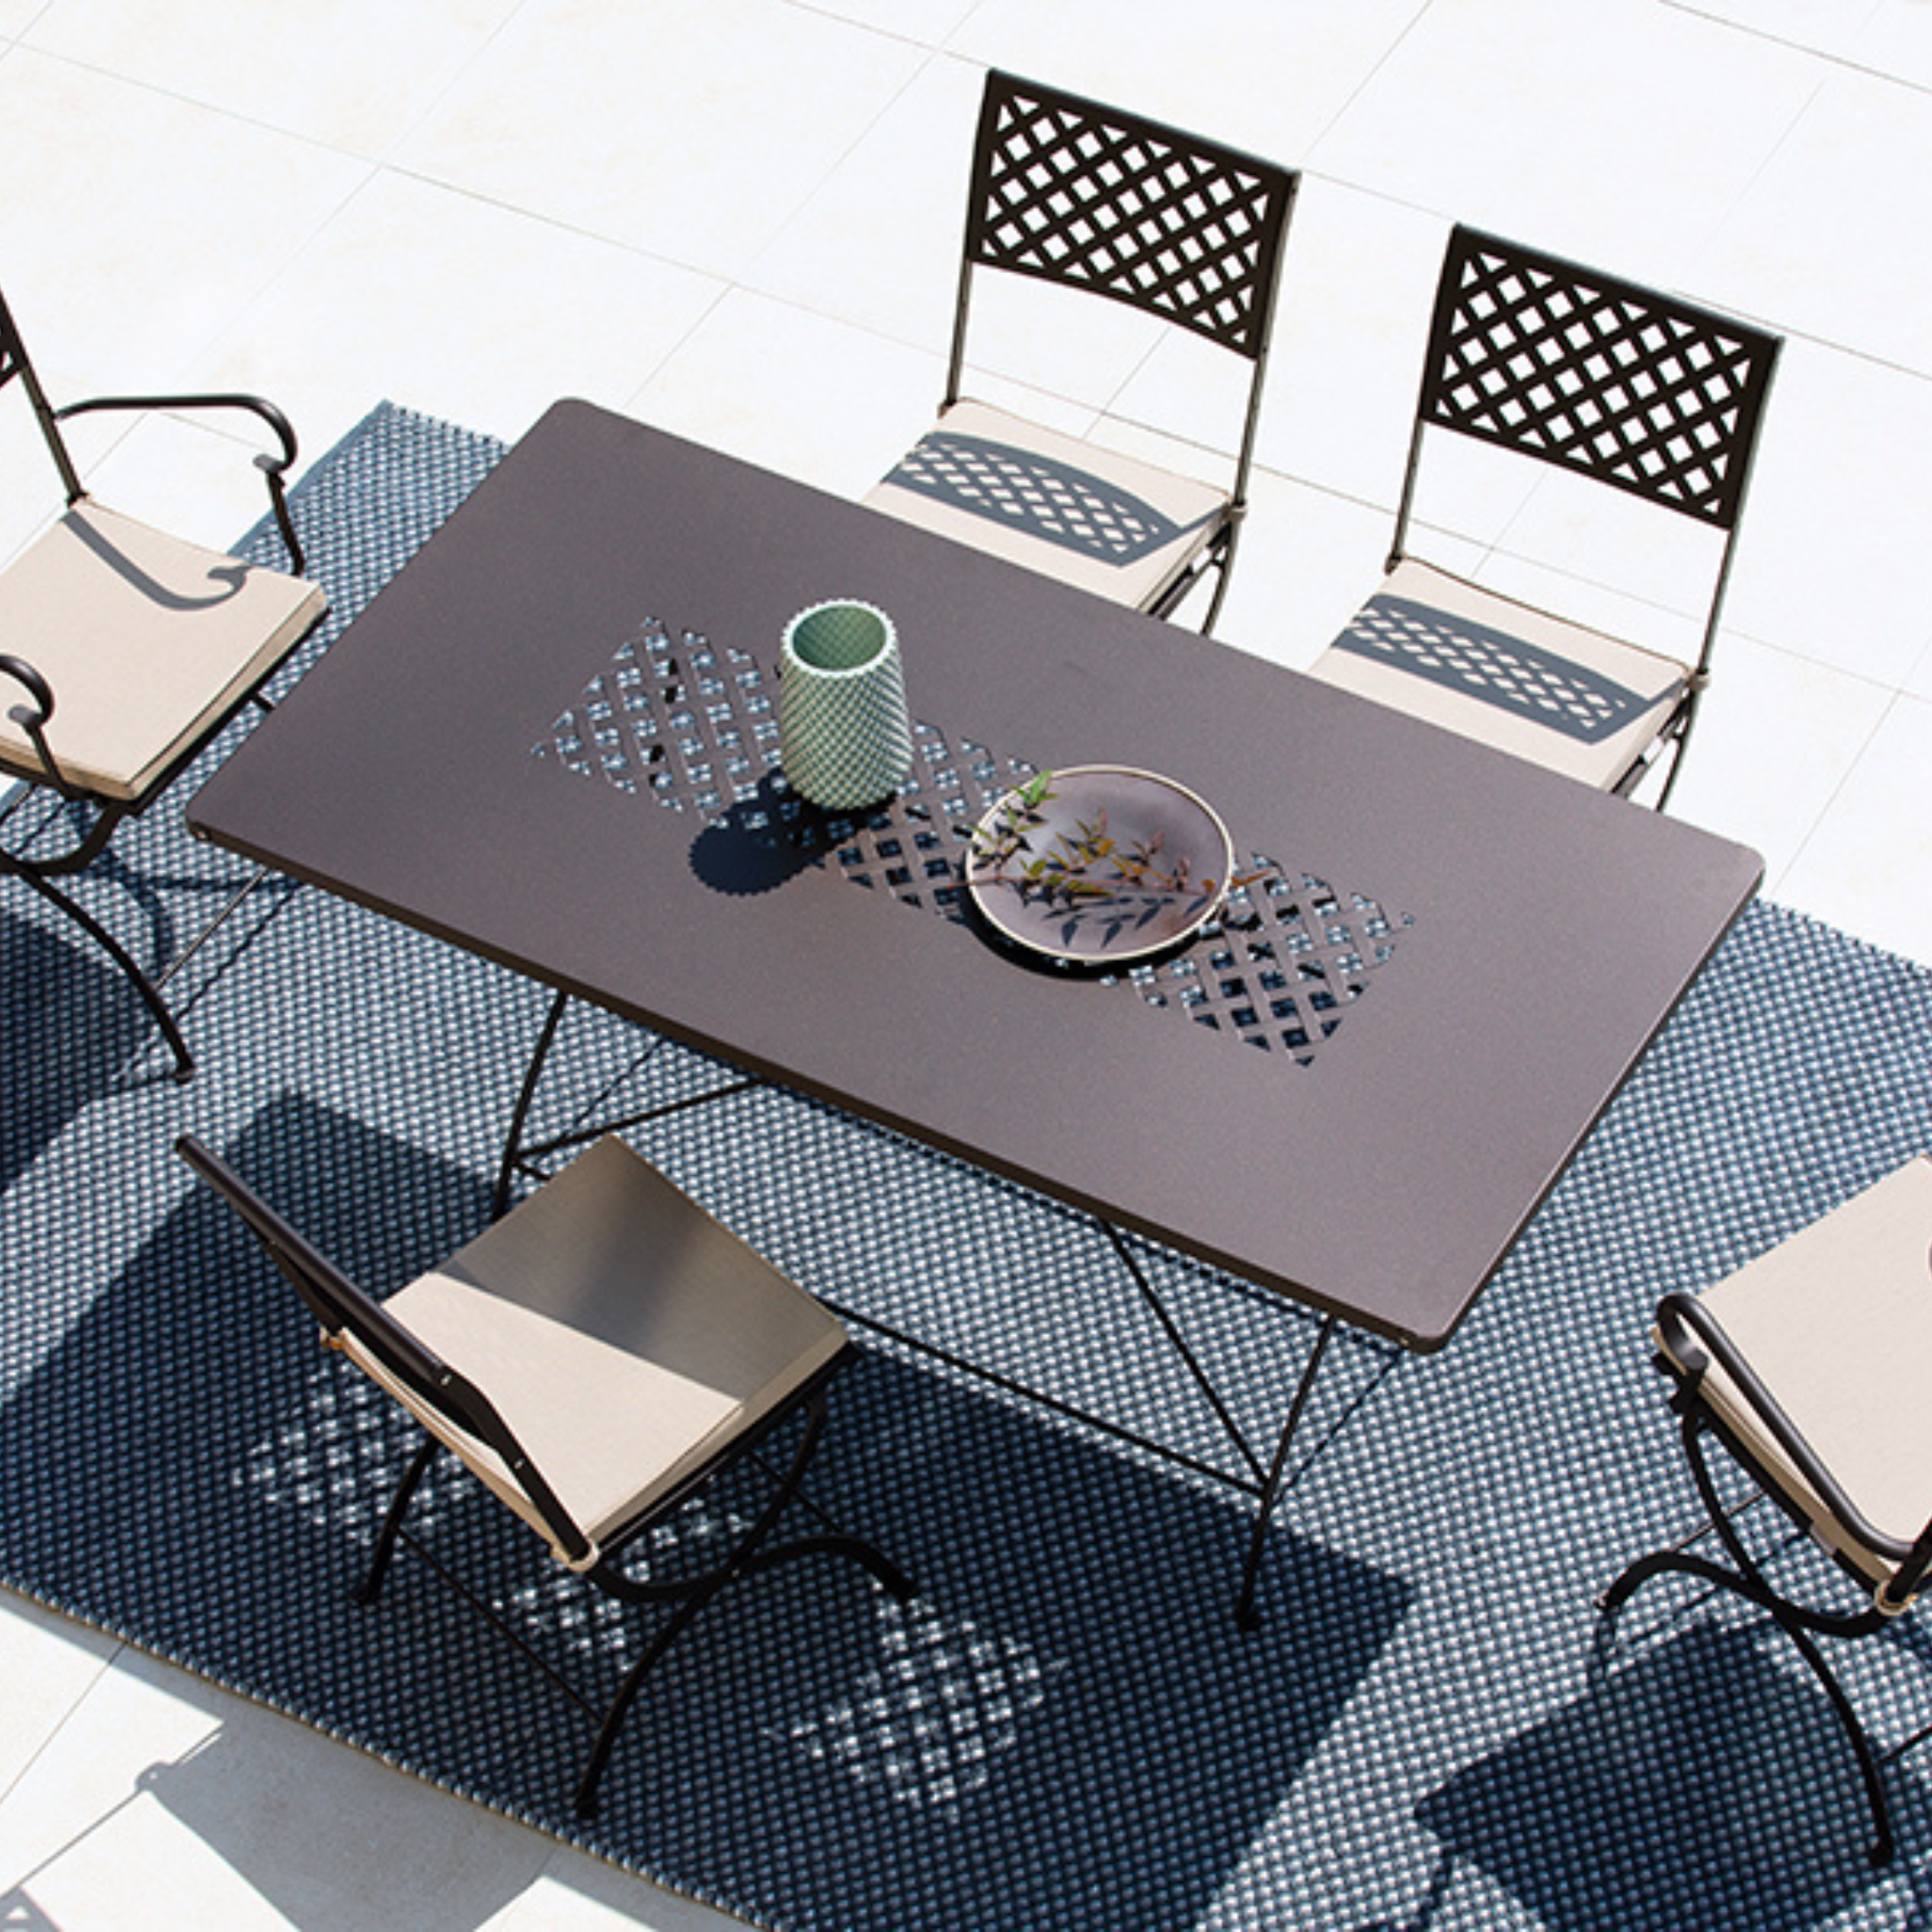 Tavolo pieghevole "Springtime" in metallo zincato per giardino h 75 cm